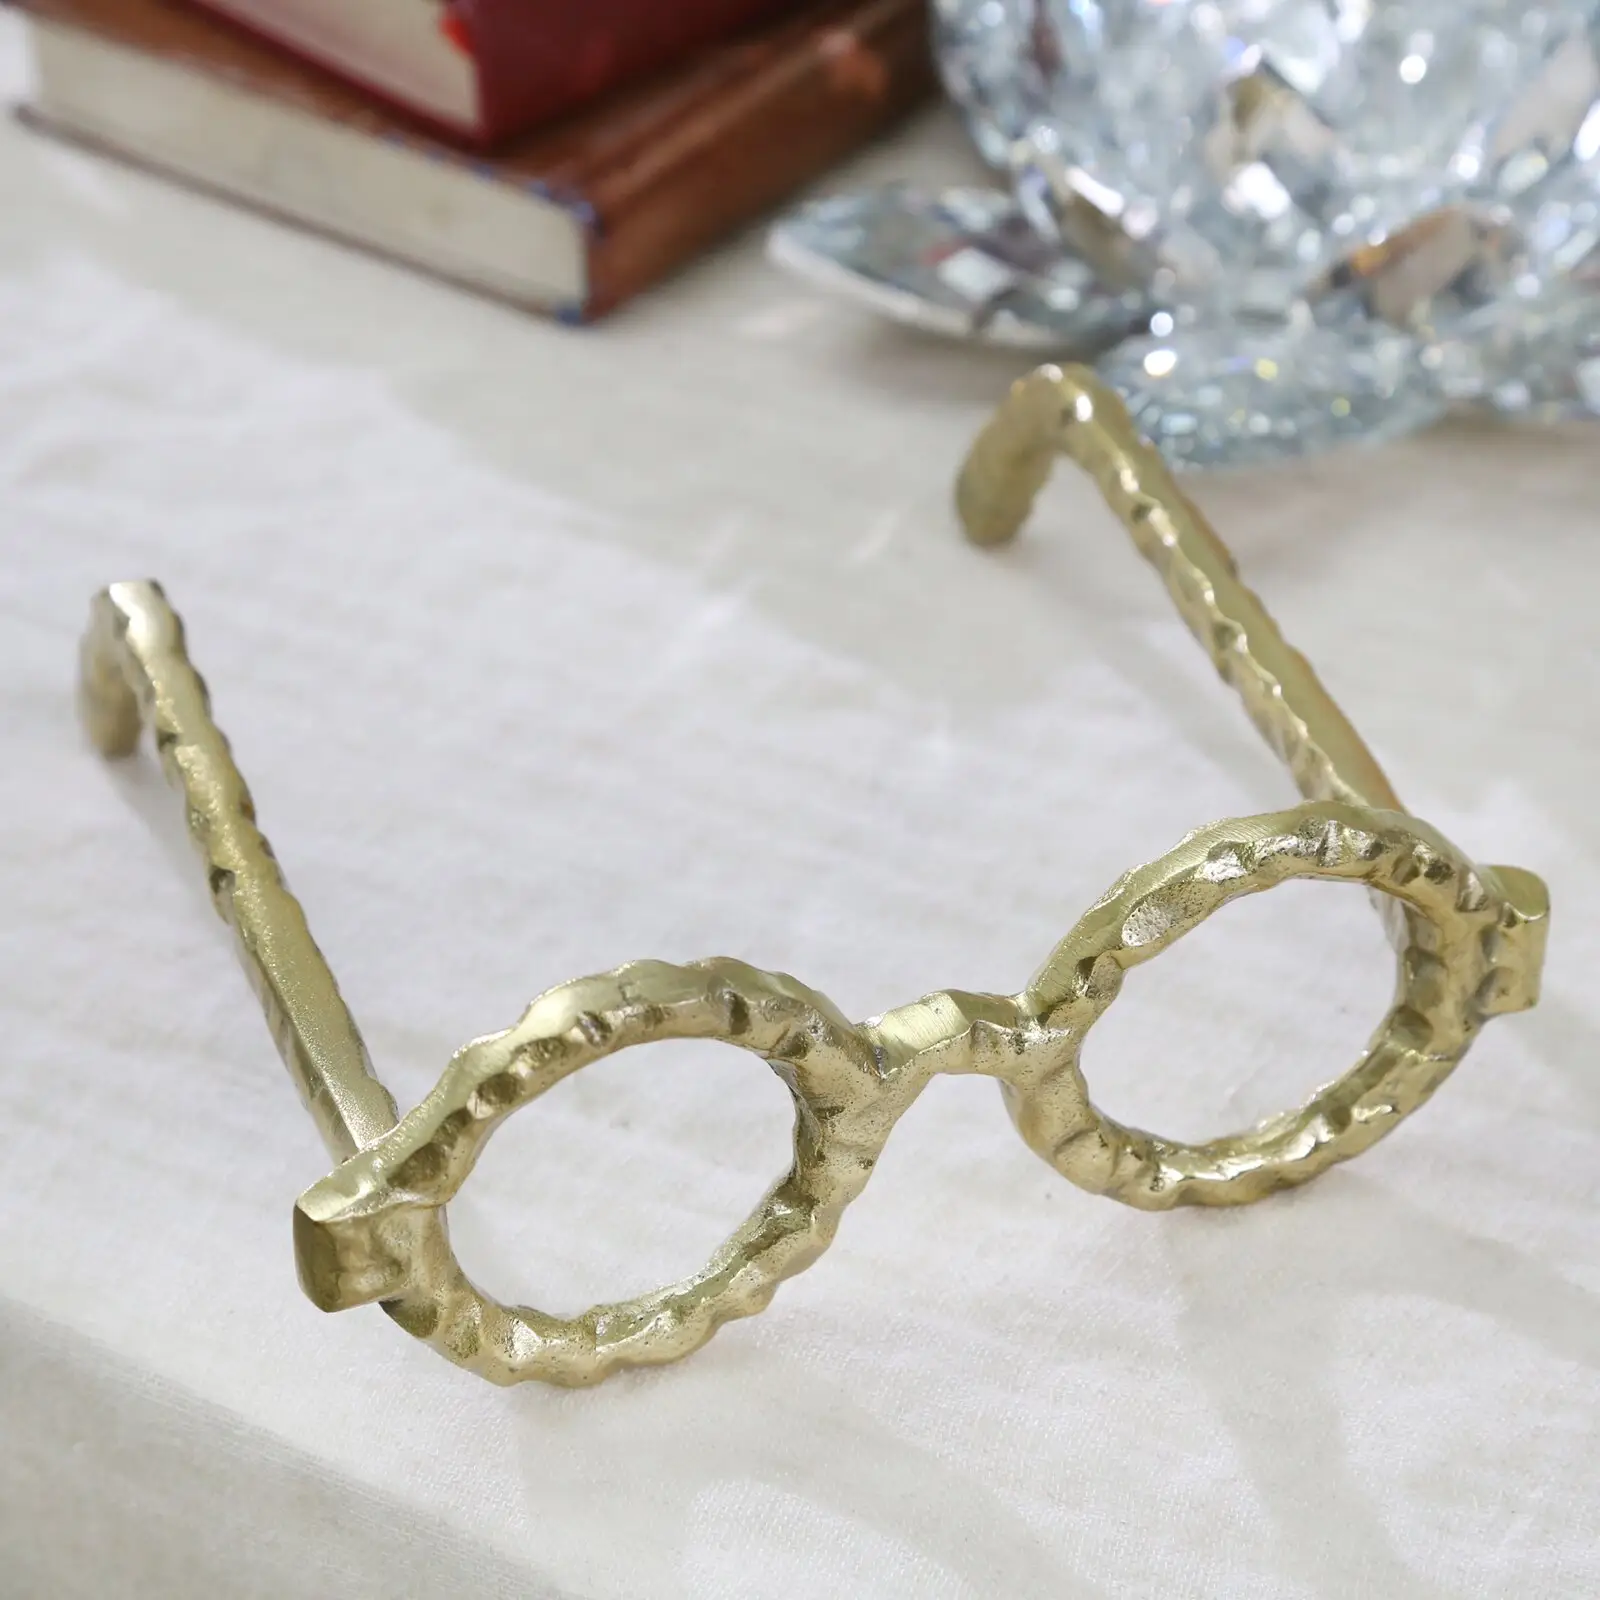 Emas Antik Aluminium Padat Buatan Tangan Finishing Kacamata Bentuk Meja Patung untuk Dijual Dalam Harga Terendah